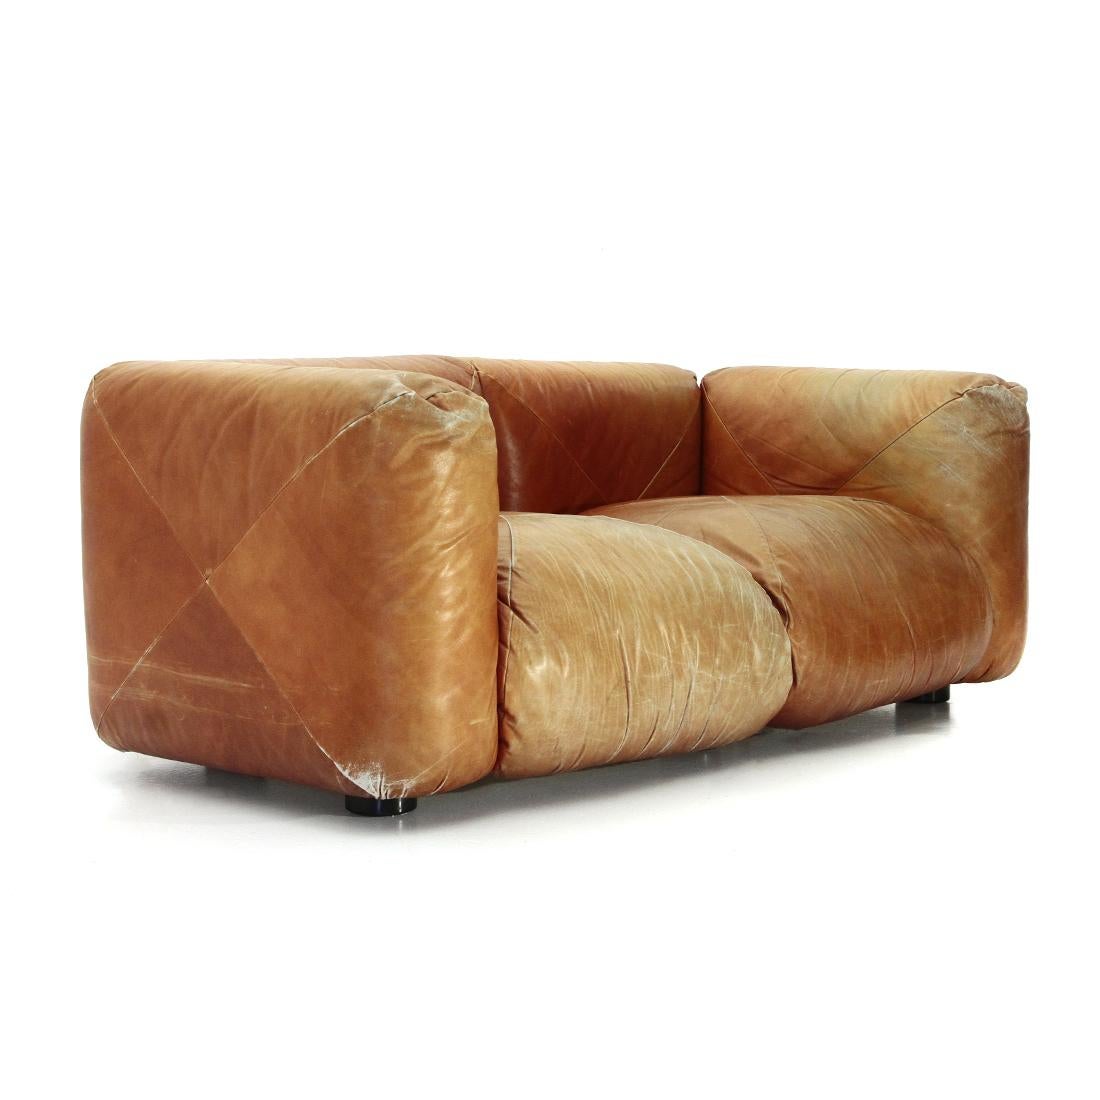 marenco sofa 2 seater